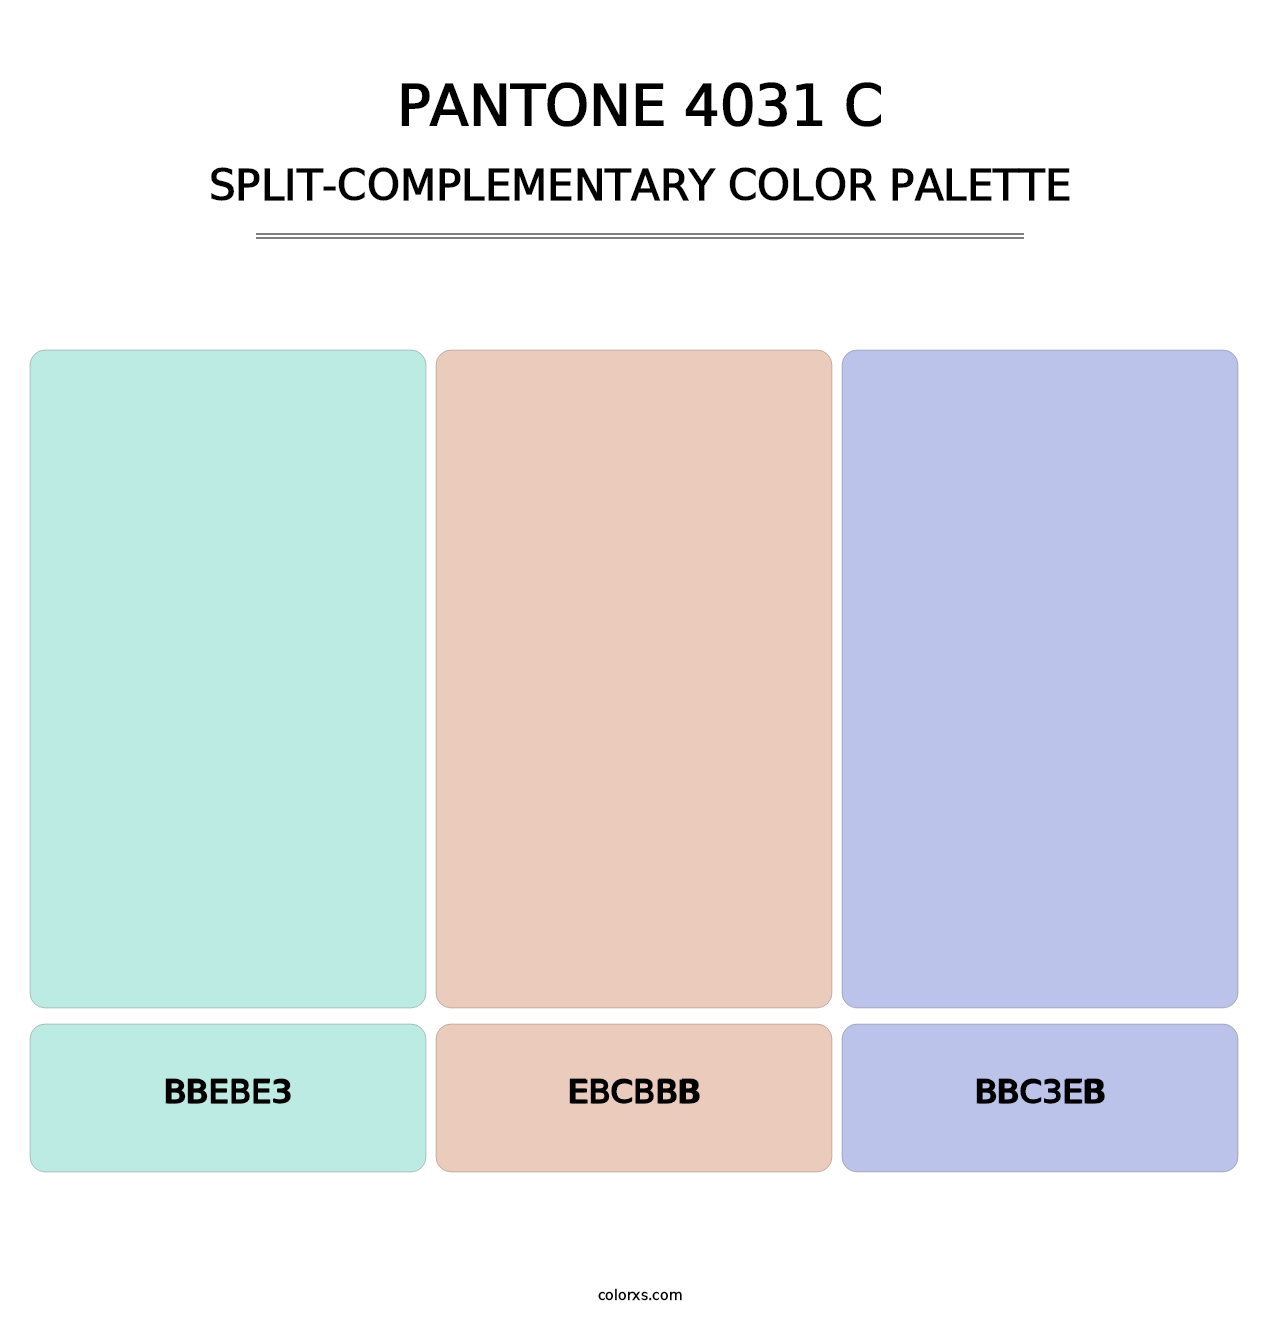 PANTONE 4031 C - Split-Complementary Color Palette